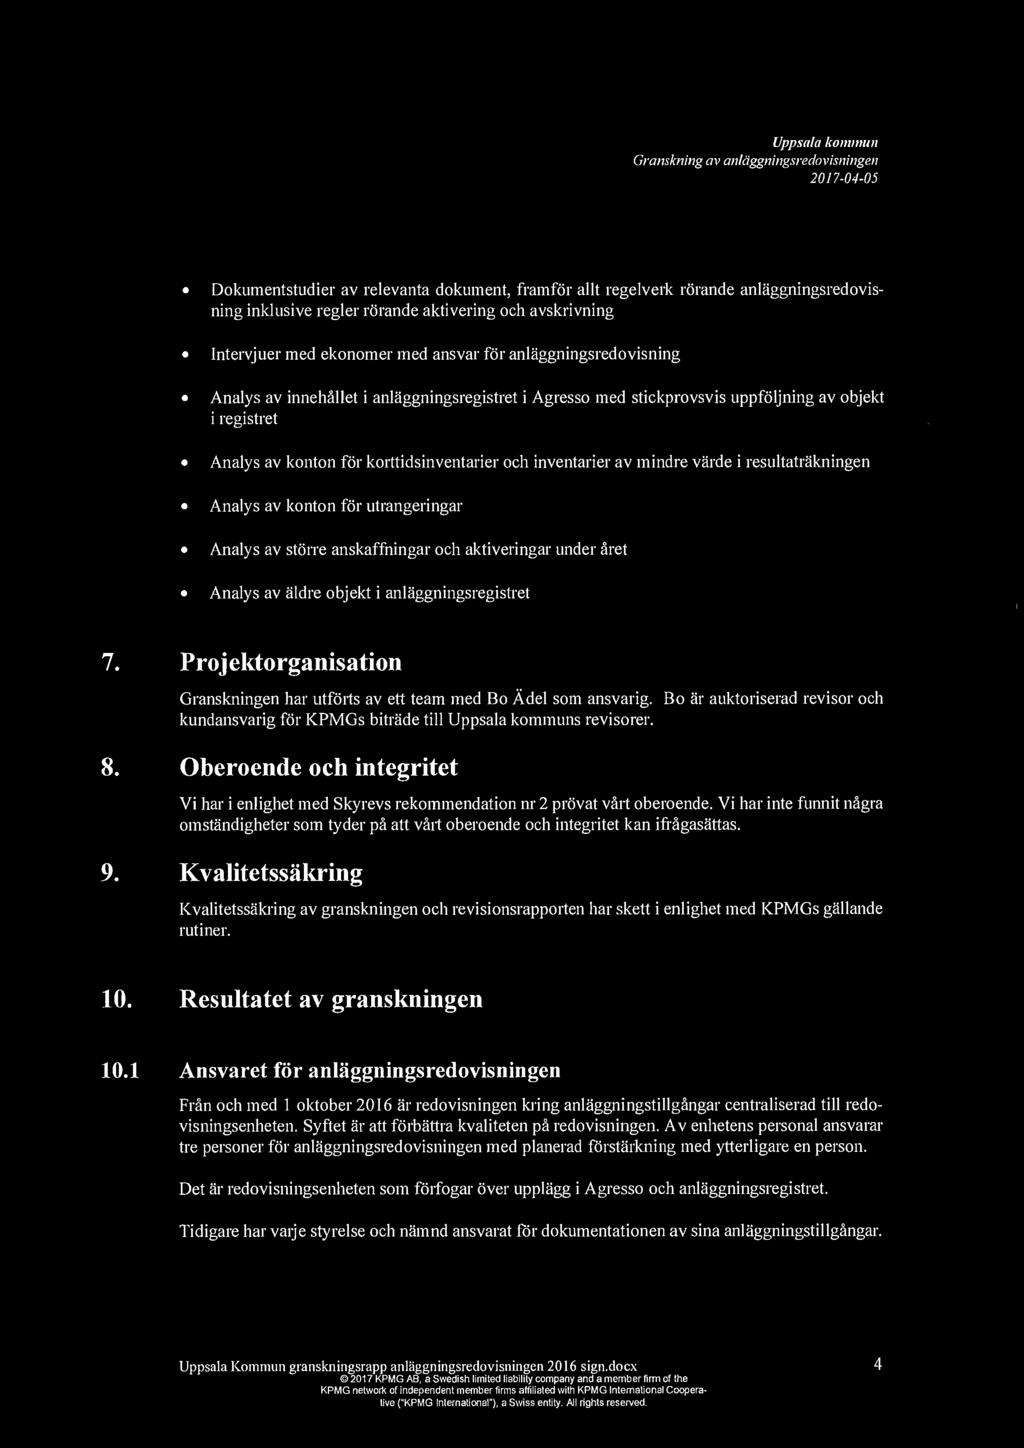 Uppsala ko1111111111 Granskning av anldggningsredovisningen Dokumentstudier av relevanta dokument, framfor allt regelverk rorande anlaggningsredovisning inklusive regler rorande aktivering och